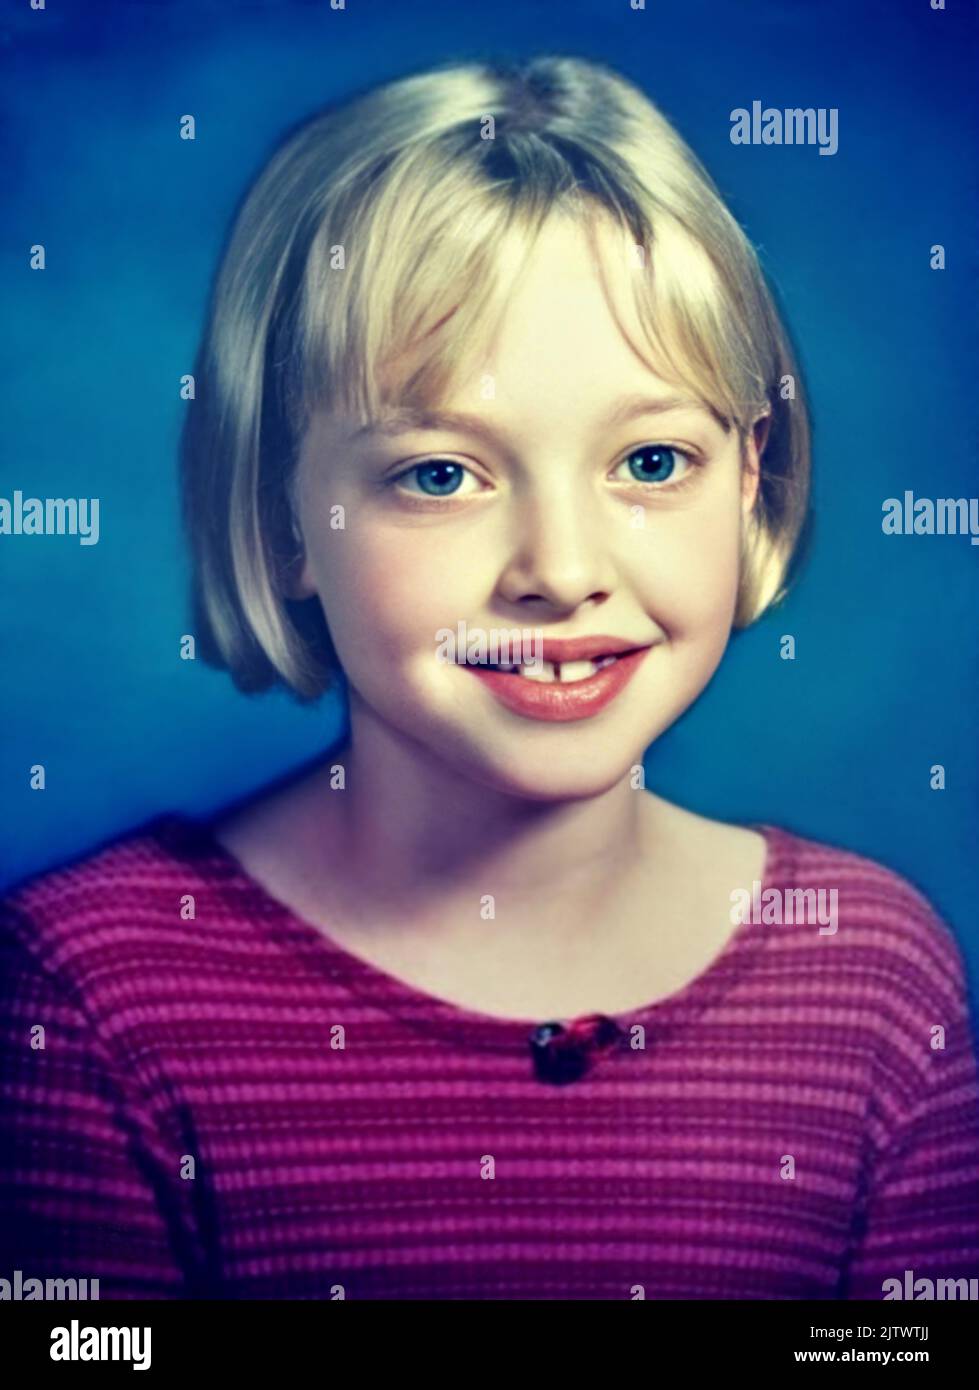 1994 ca , USA : l'attrice americana, modella e cantante AMANDA SEYFRIED ( data di nascita 3 dicembre 1985 ) quando era una giovane ragazza di 9 anni, foto della SCUOLA YEARBOOK . Fotografo sconosciuto .- STORIA - FOTO STORICHE - ATTRICE - FILM - CINEMA - personalità da giovane giovani - personalità quando era giovane - ANNUARIO SCOLASTICO - SIMBOLO DEL SESSO - ADOLESCENTE - bionda - bionda - sorriso - sorriso - BAMBINA - bambino - bambini - BAMBINO - BAMBINI - INFANZIA - INFANZIA --- ARCHIVIO GBB Foto Stock